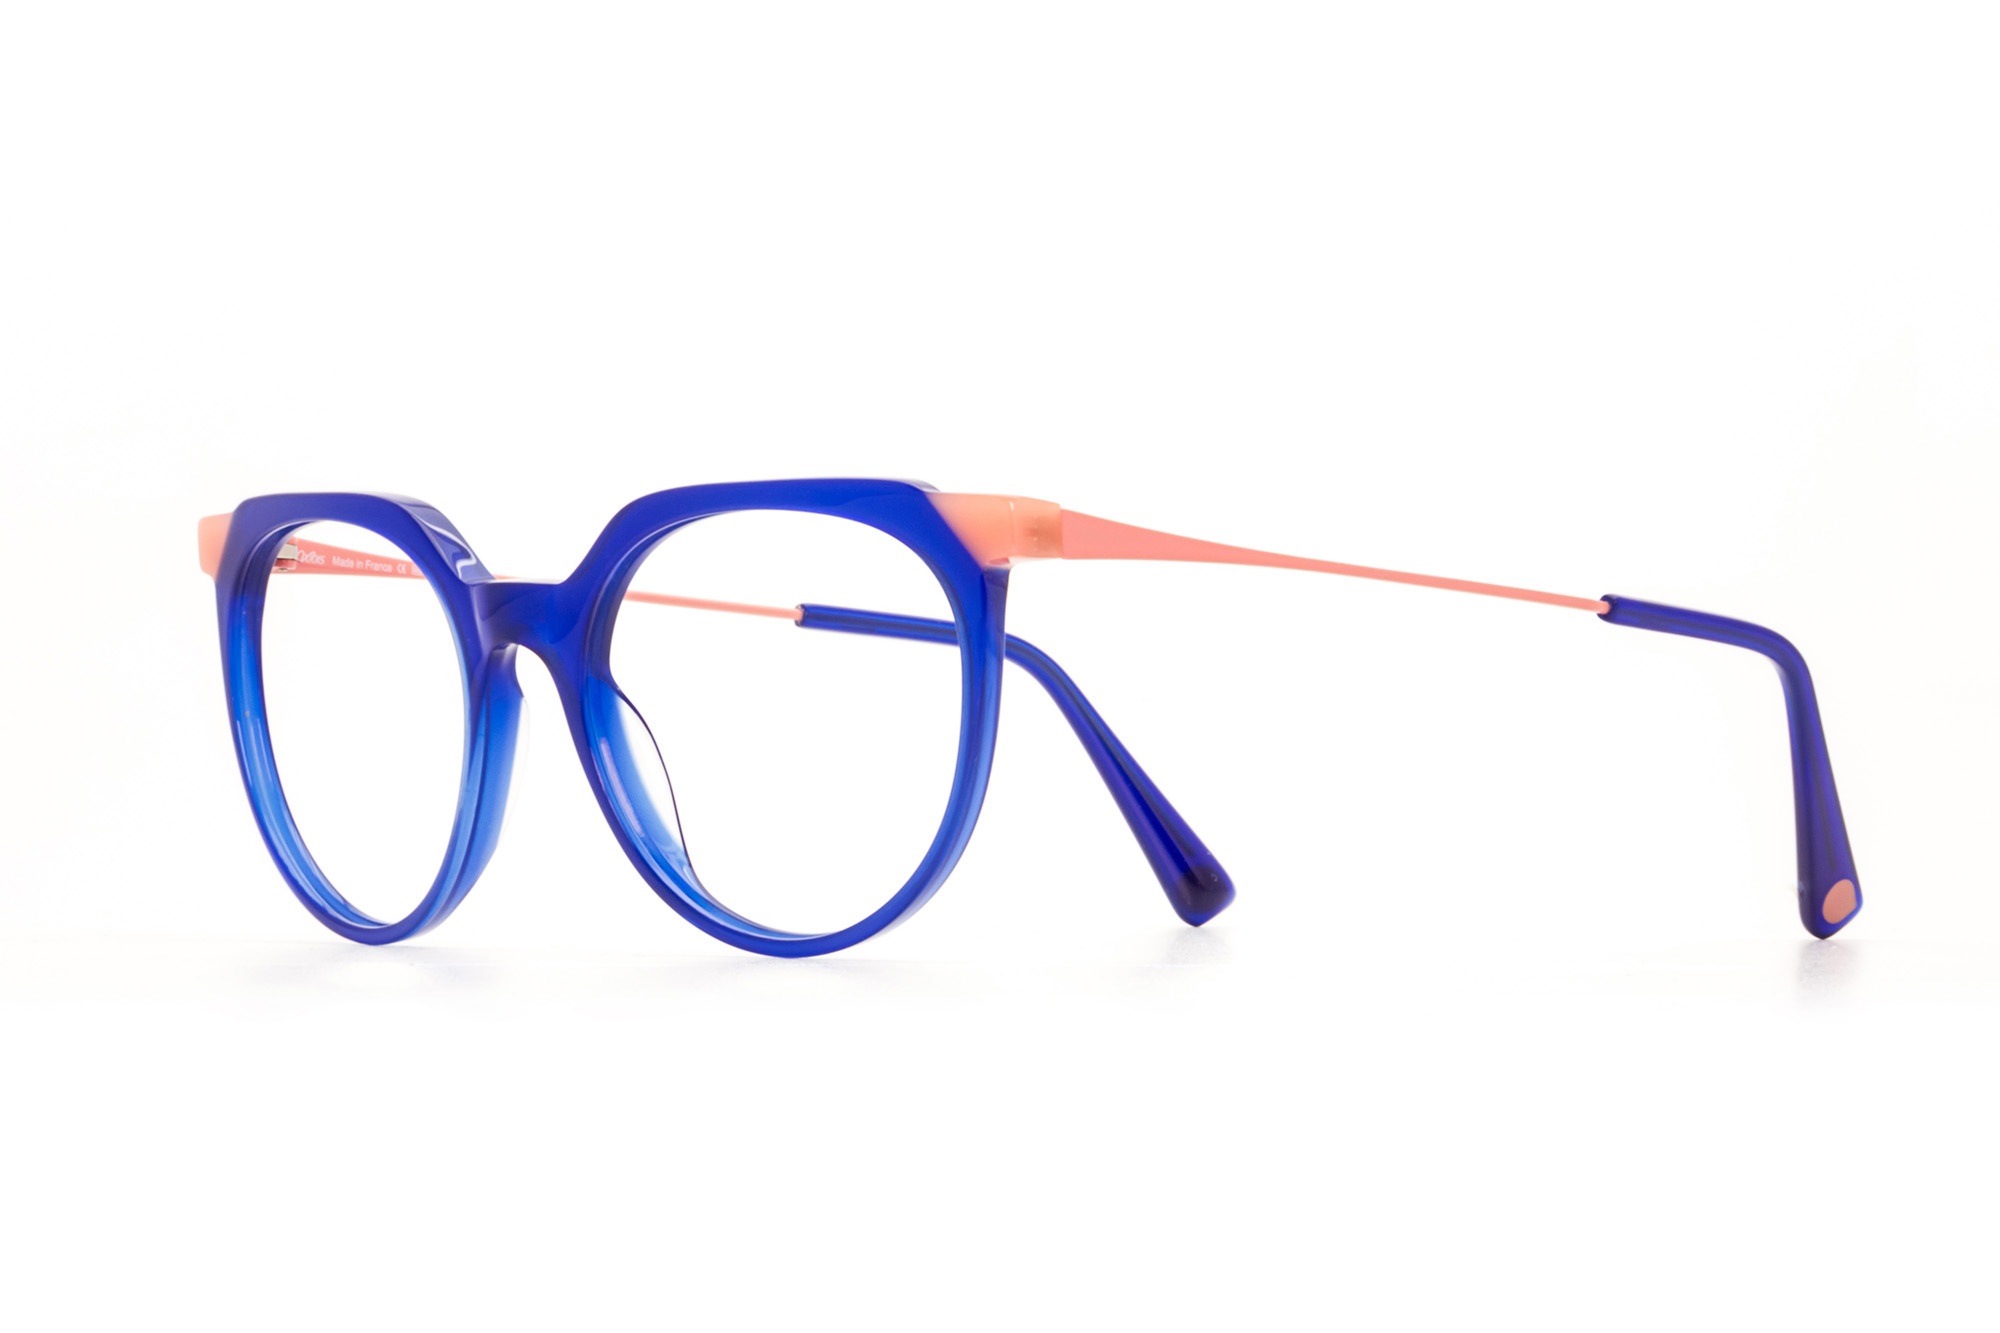 Kullanıma hazır optik tarzda işlenmiş camları ve optik uyumlu çerçevesiyle Oxibis Tango TA1C5 orta ekartman mavi ve pembe renkli cat eye model kadın gözlüğünü optisyen veya gözlükçülerin sunacağı numarasız veya numaralı cam özelleştirmeleriyle size en yakın gözlükçüden satın alabilirsiniz.